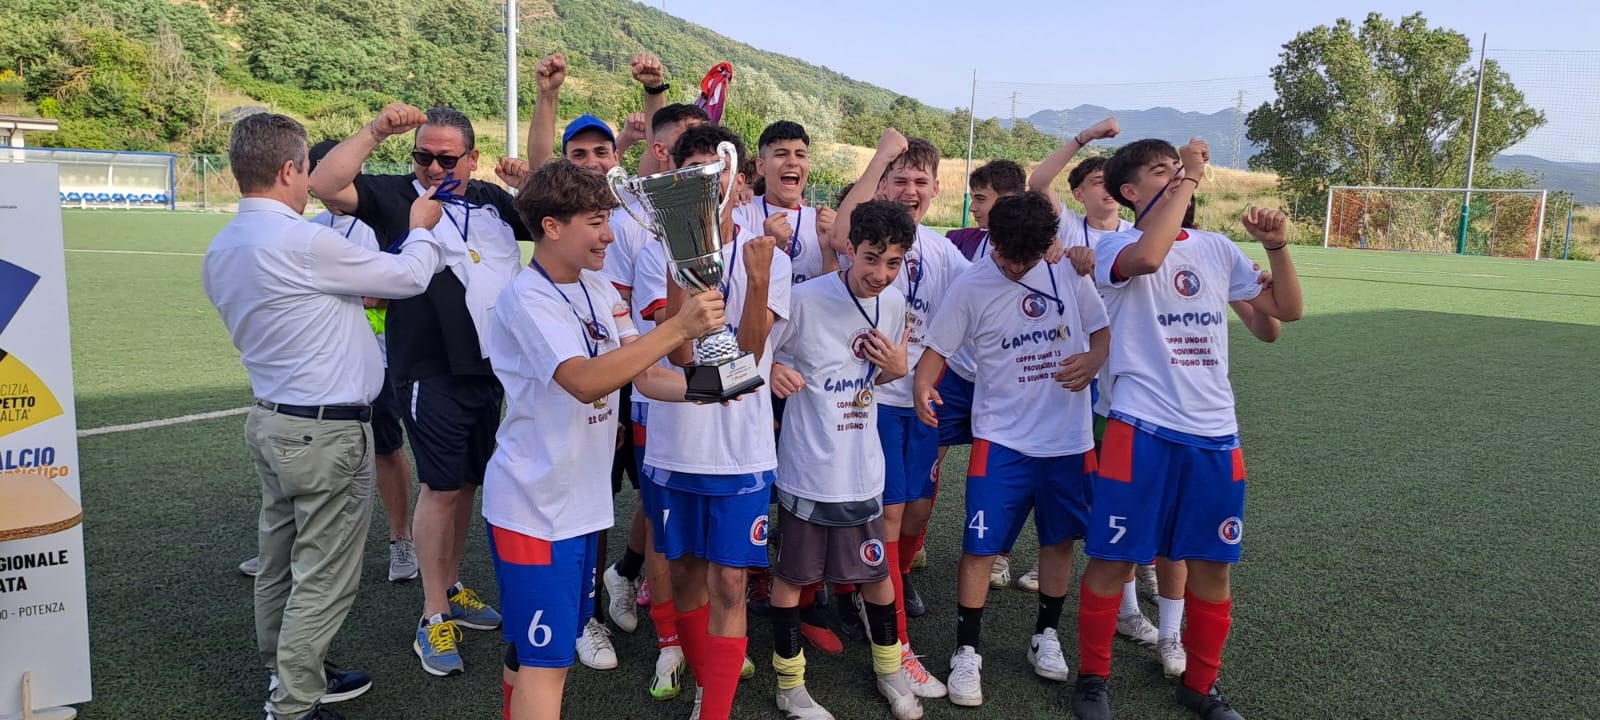 L’ ACS 09 vince la coppa provinciale U15 Potenza di calcio a 11